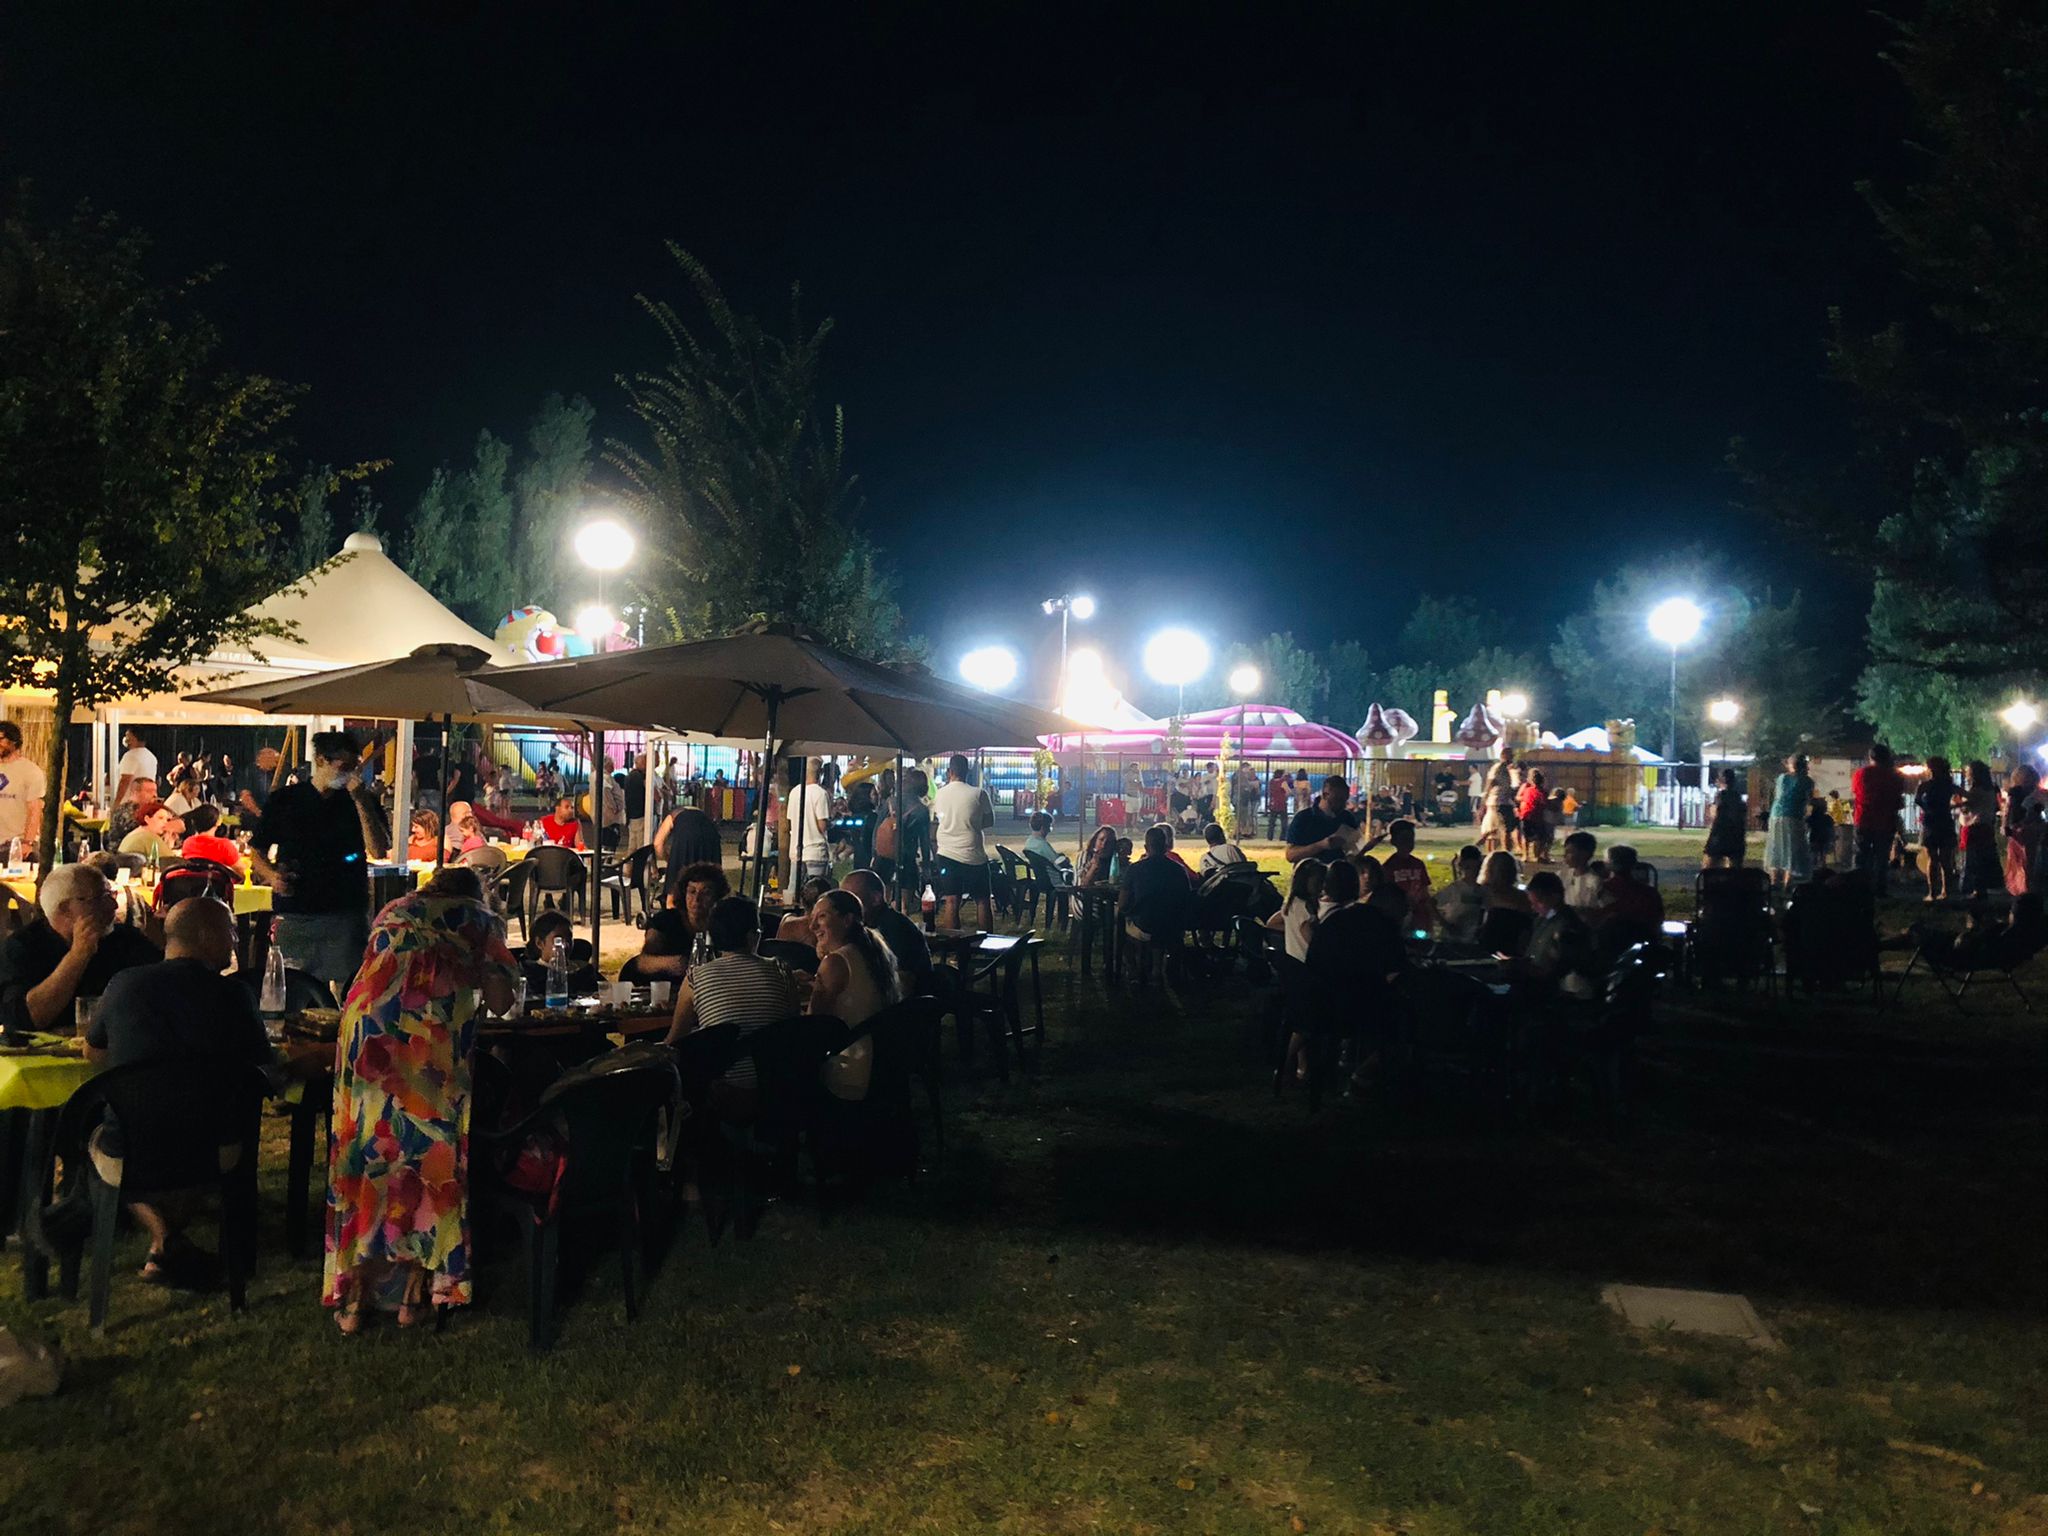 Grande successo per la festa di mezz’estate al Parco Vasco da Gama